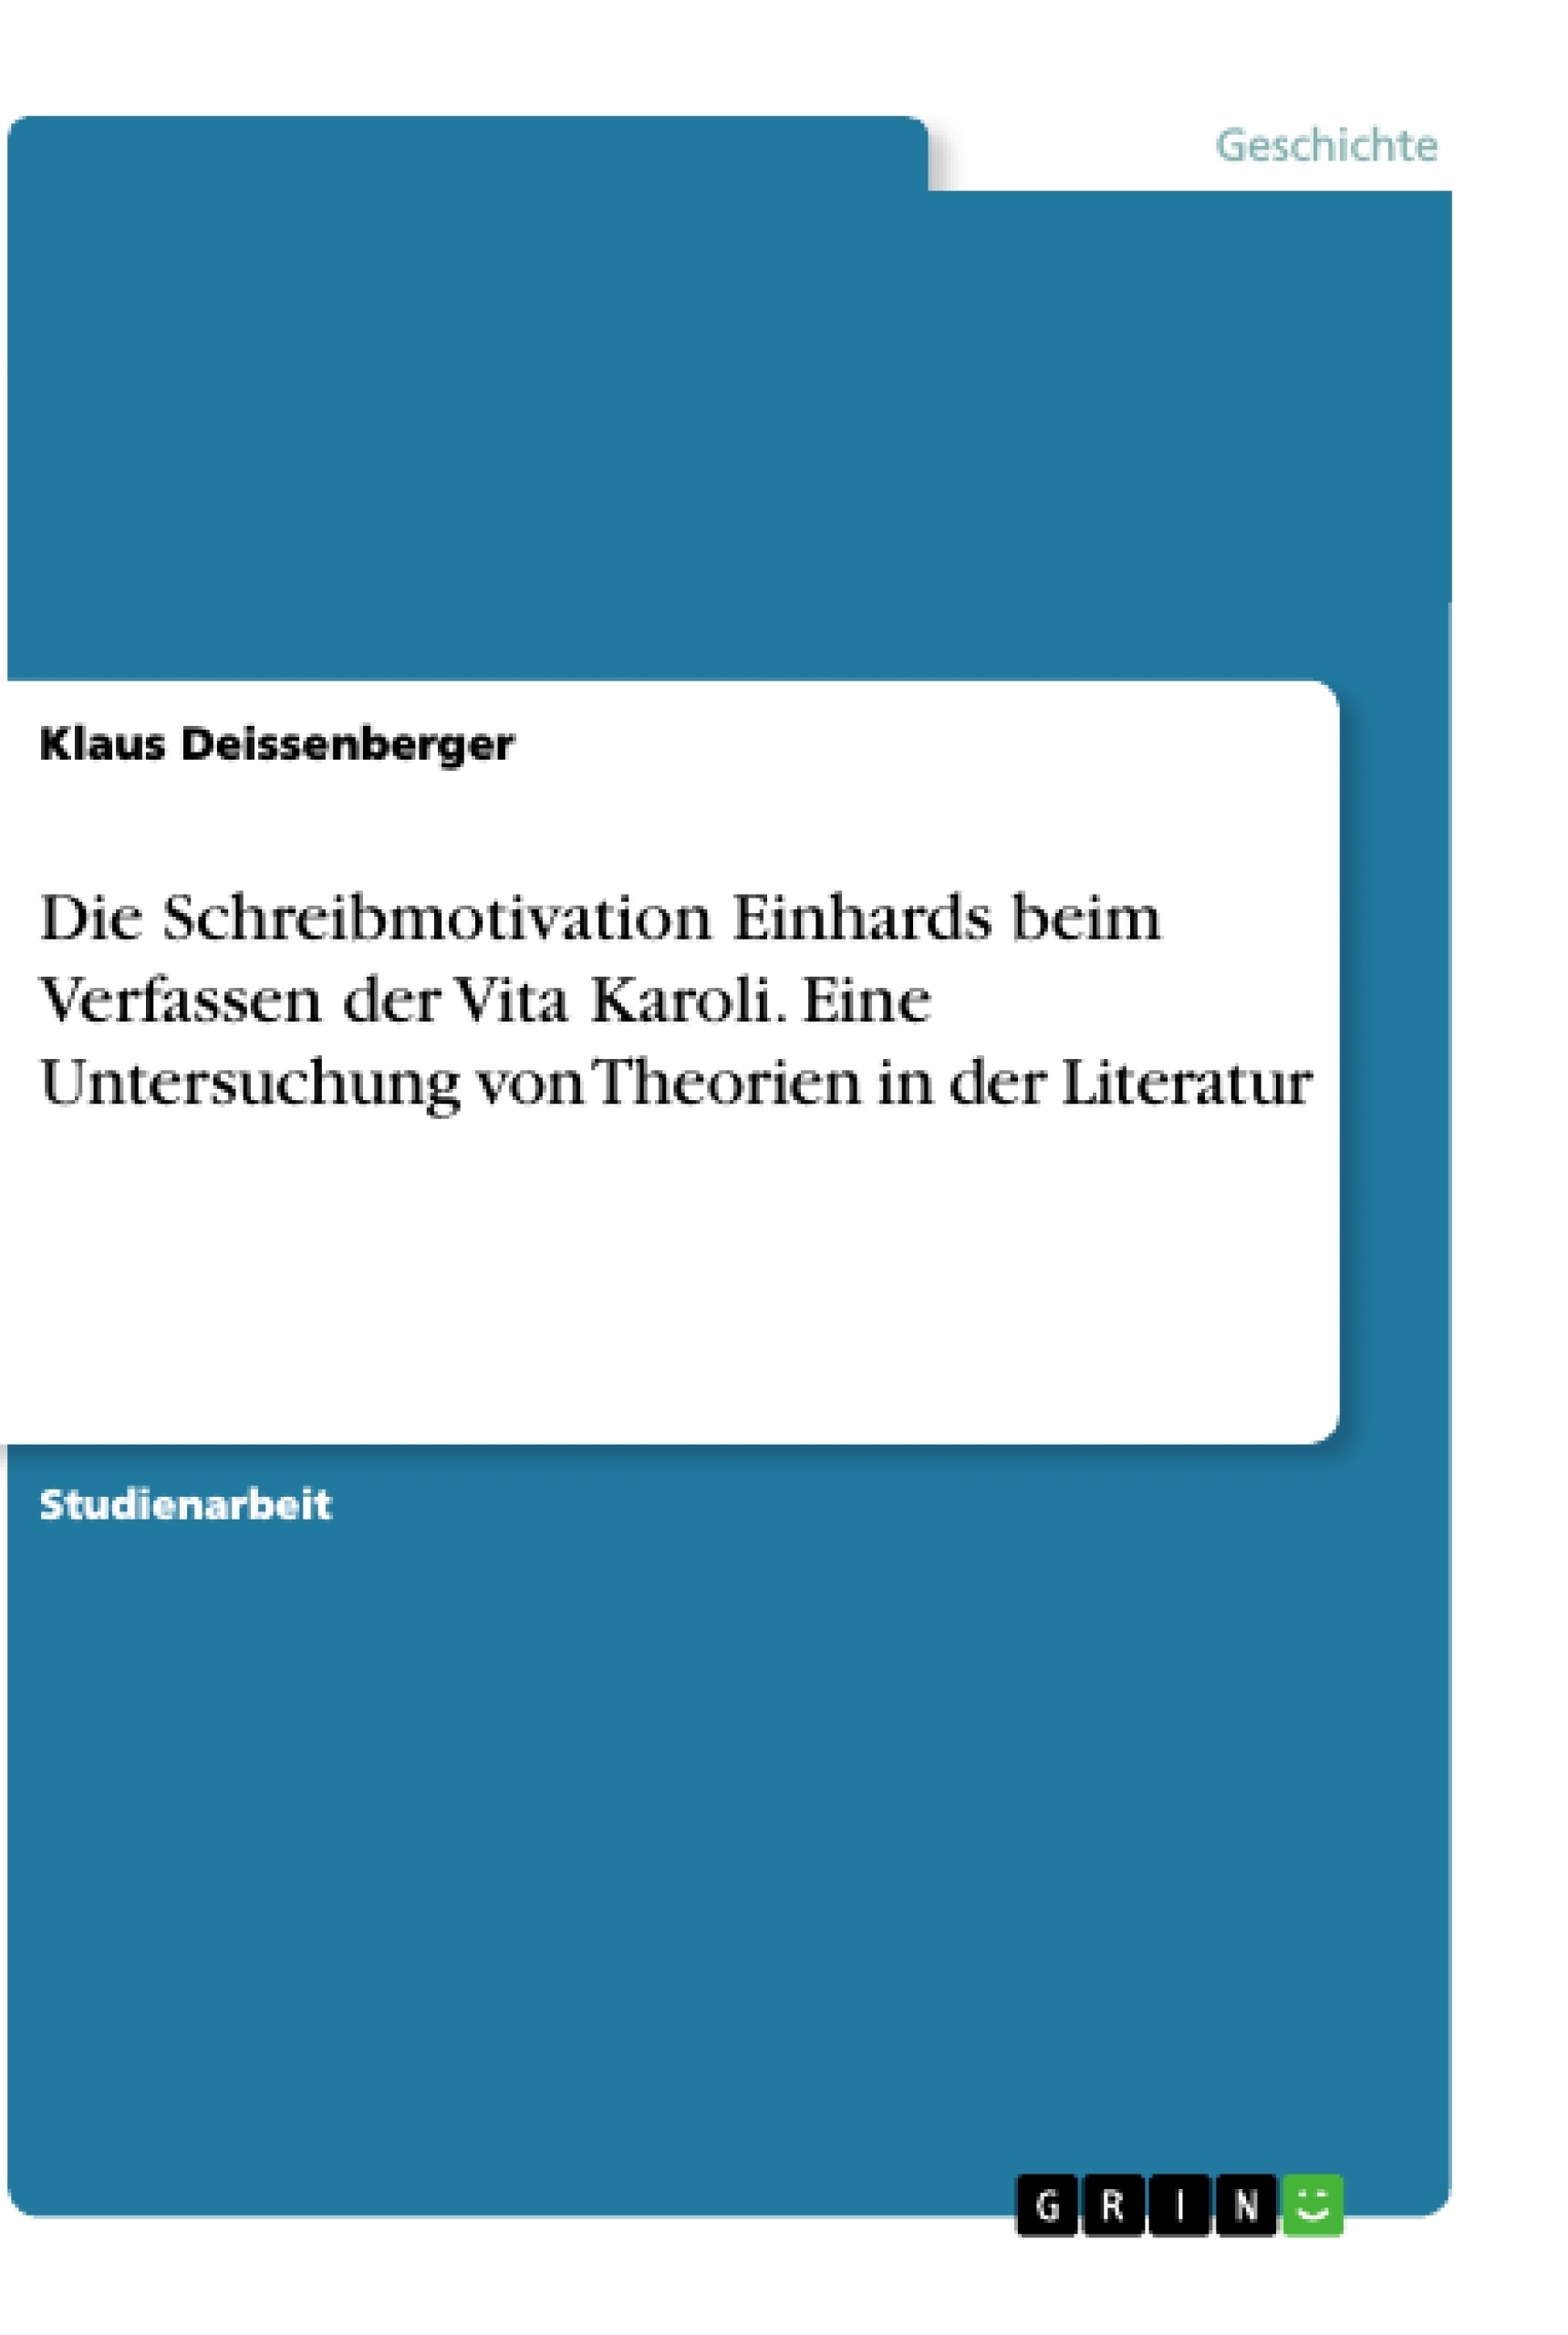 Título: Die Schreibmotivation Einhards beim Verfassen der Vita Karoli. Eine Untersuchung von Theorien in der Literatur